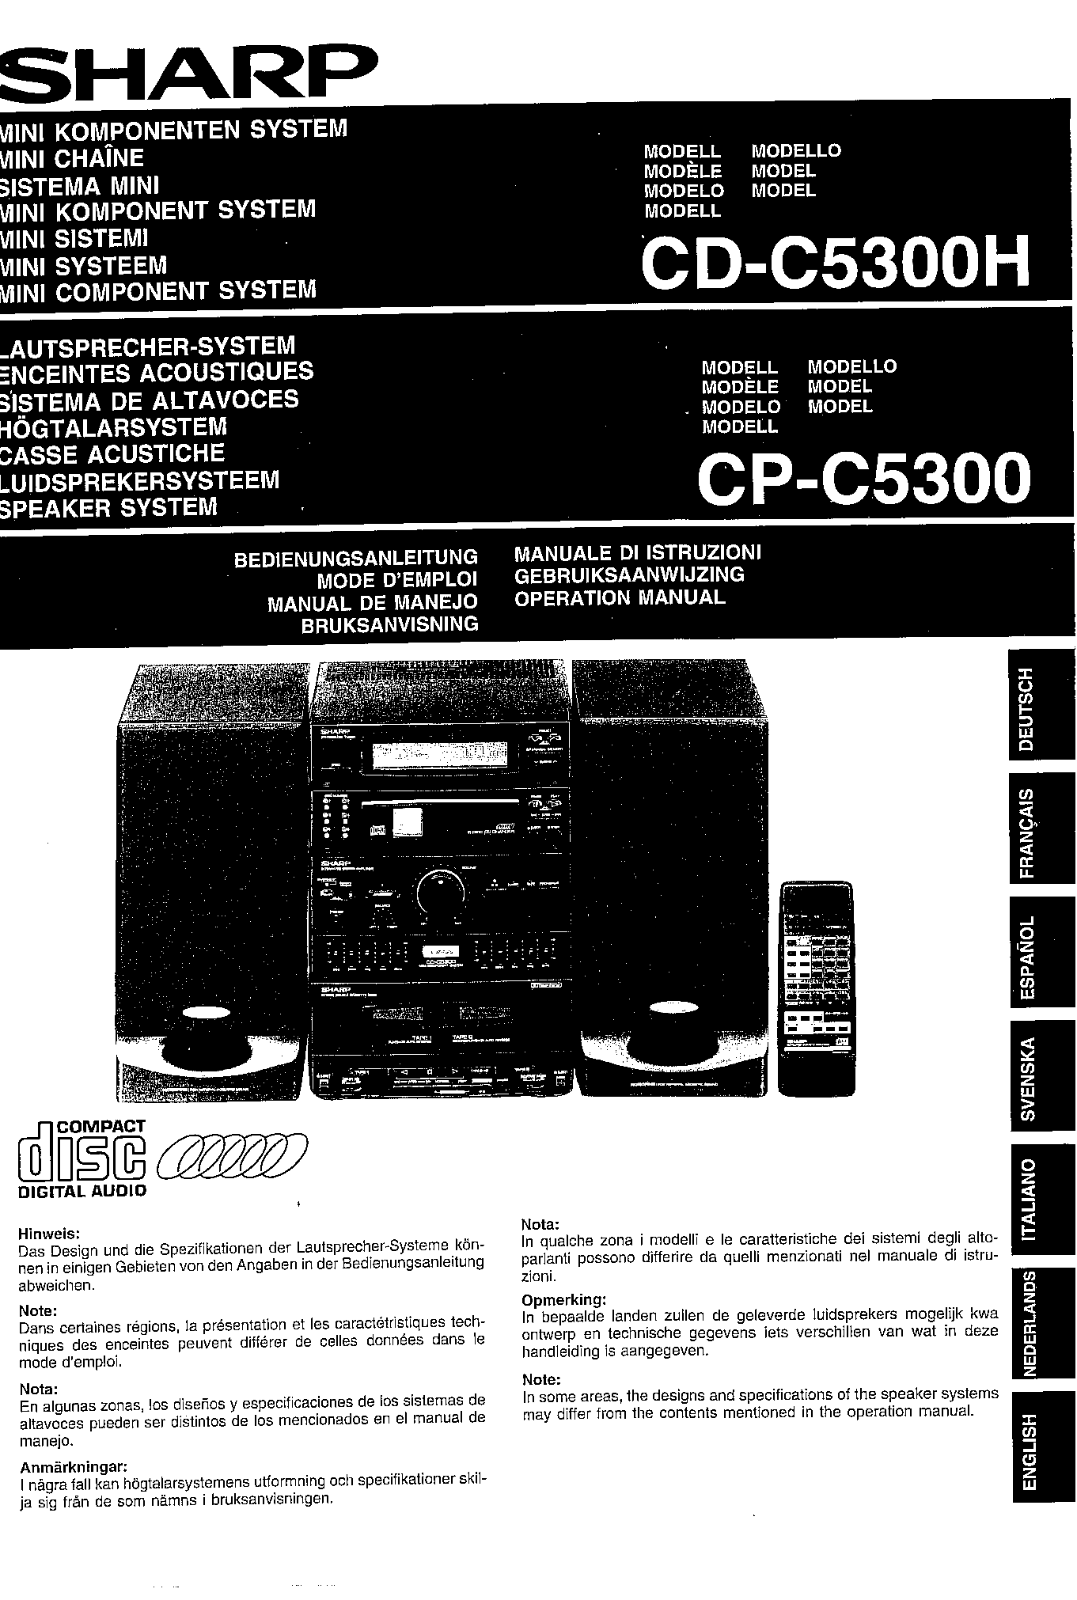 Sharp CD, CP-C5300, CD-C5300H Manual